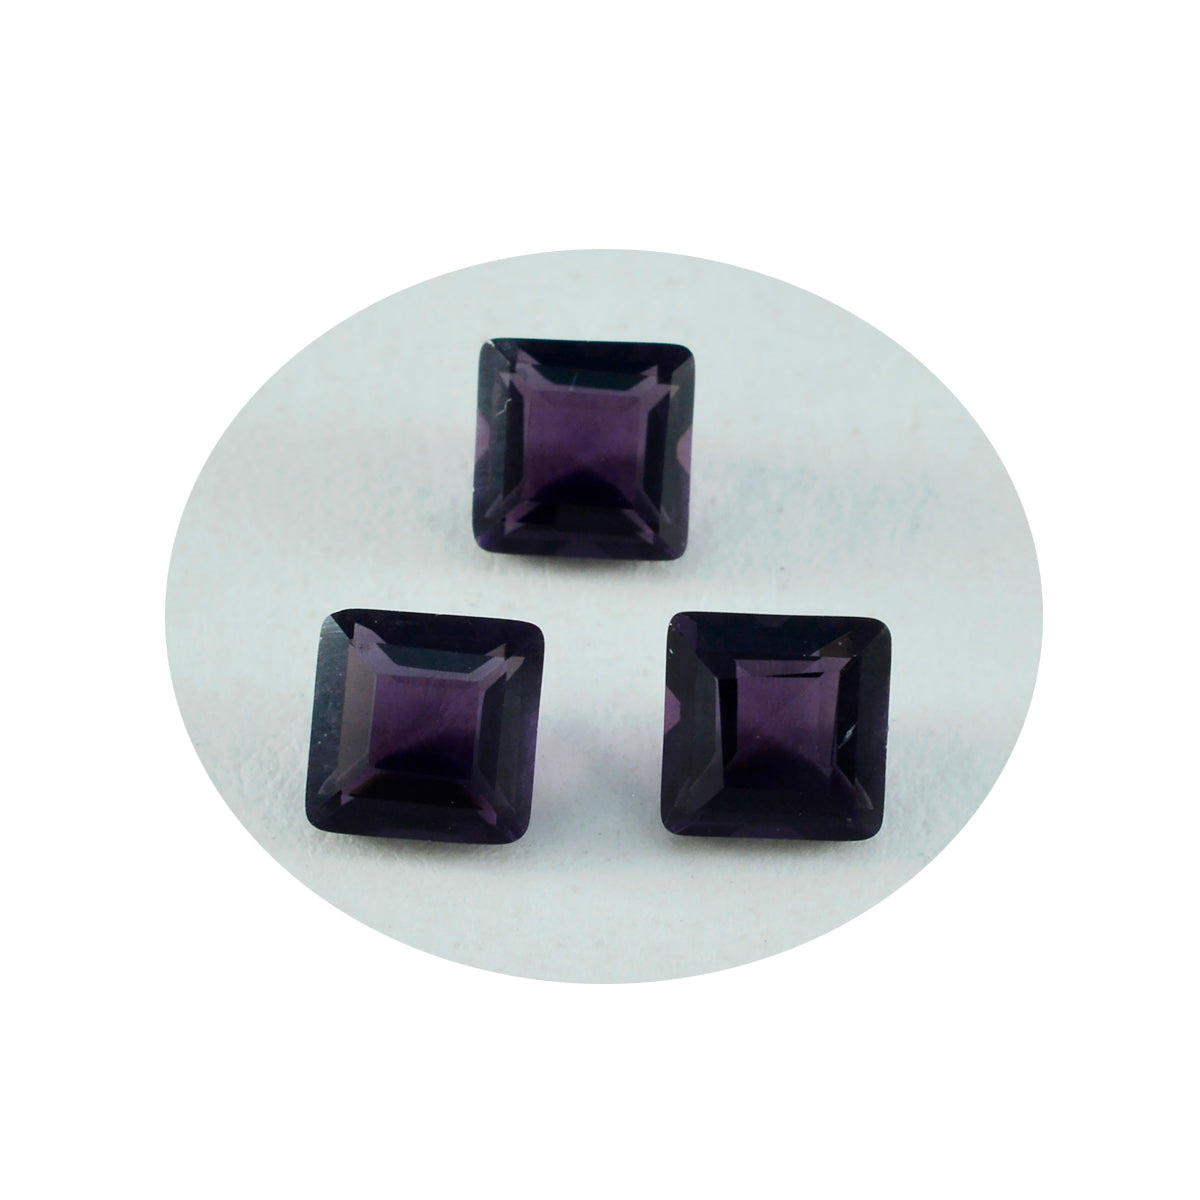 Riyogems 1 Stück violetter Amethyst mit CZ, facettiert, 10 x 10 mm, quadratische Form, erstaunliche Qualität, lose Edelsteine